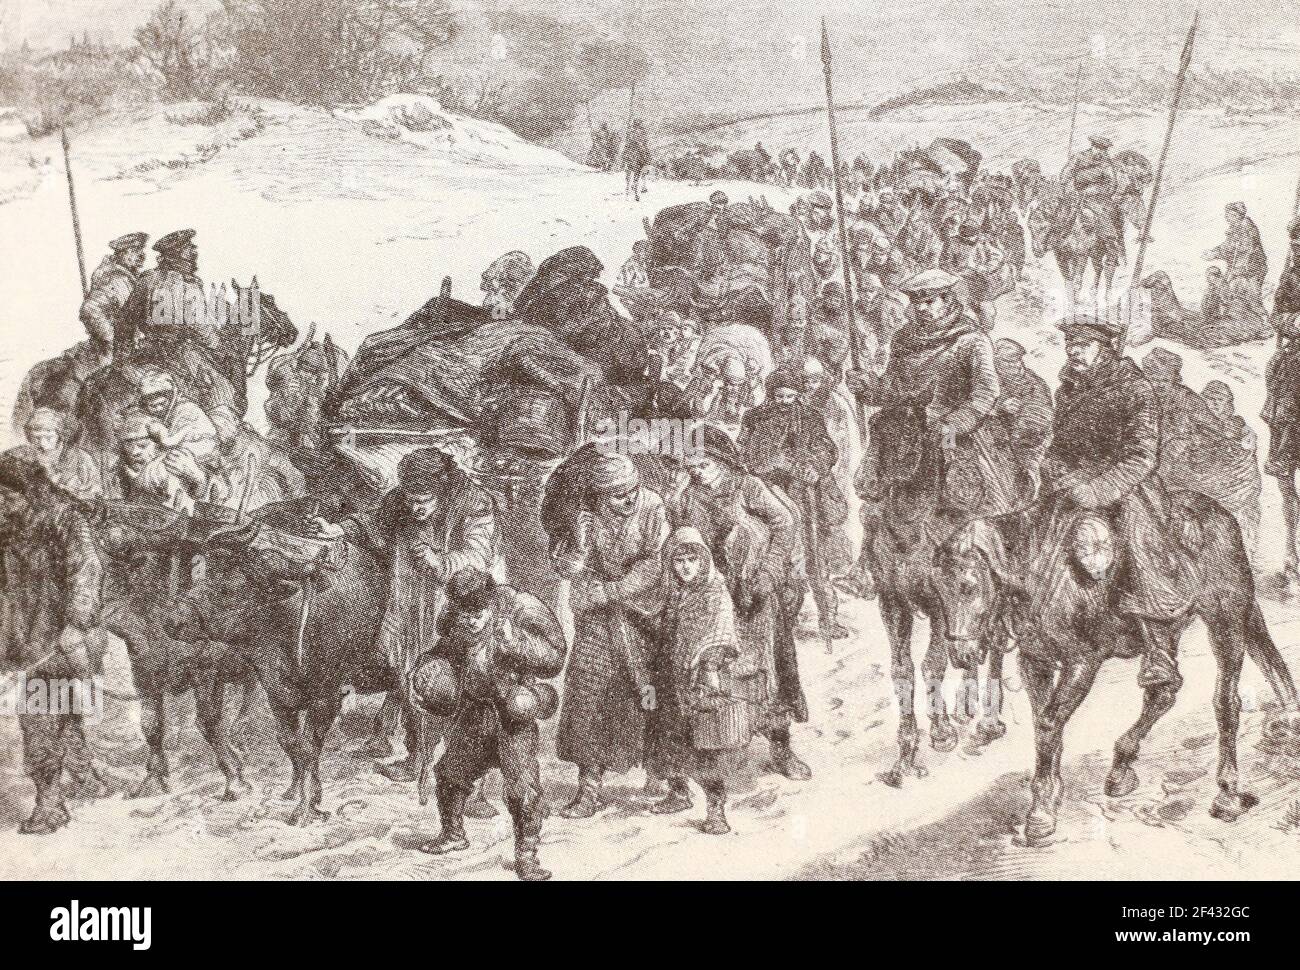 Retour des réfugiés bulgares à domicile sous la protection des soldats russes. Gravure de 1878. Banque D'Images